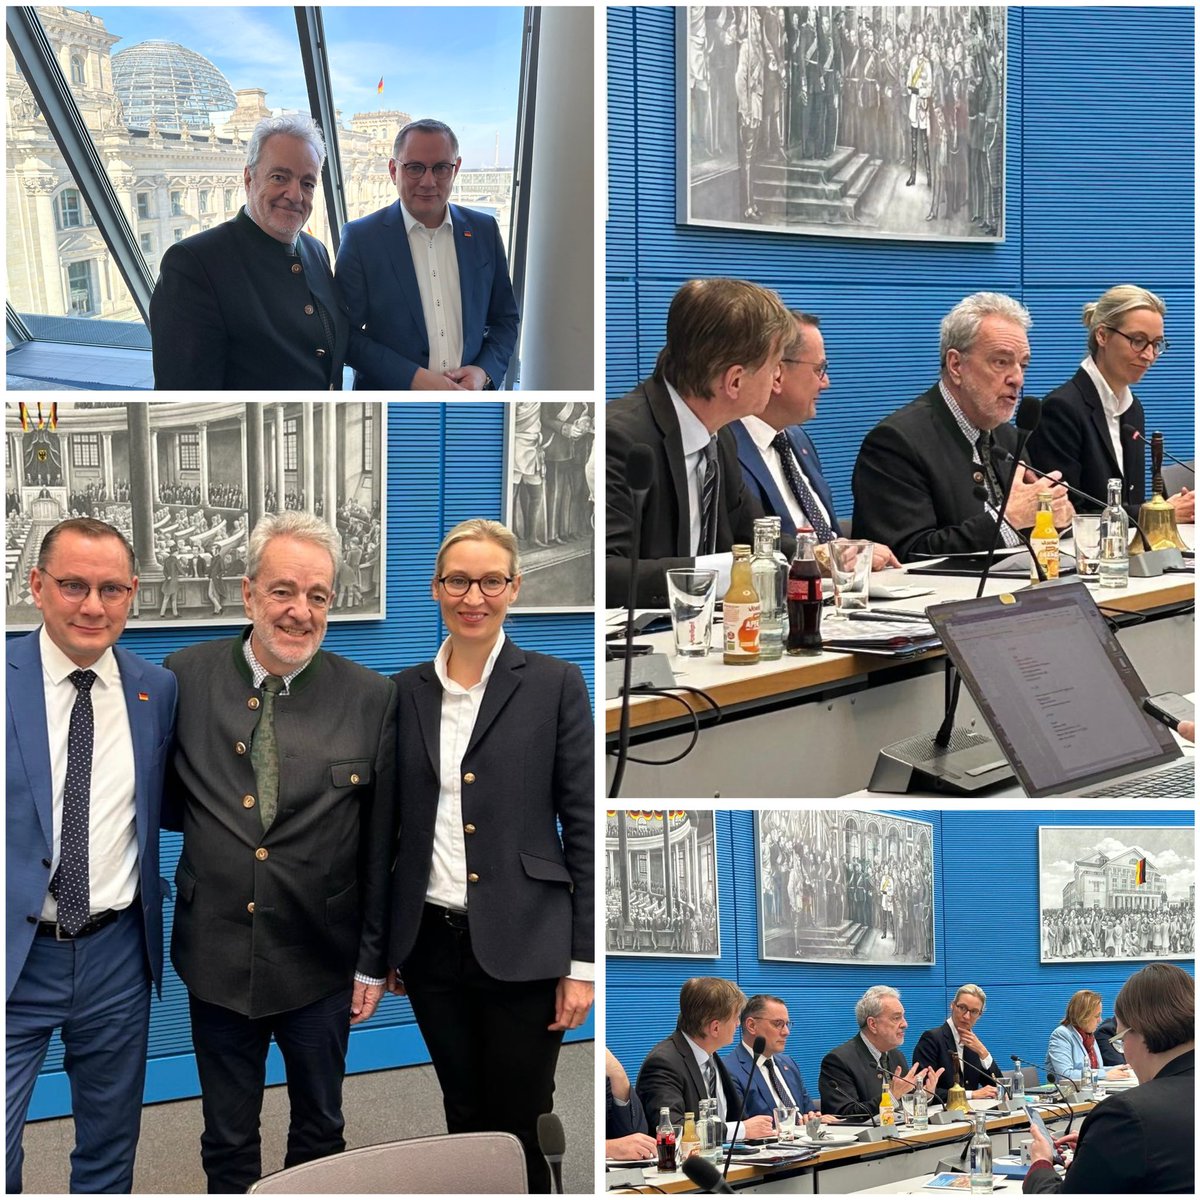 Fantastisch ontvangen door @Alice_Weidel en @Tino_Chrupalla en door alle leden van hun Bundestags-fractie. Leerrijke bouwstenen voor toekomstige samenwerking.